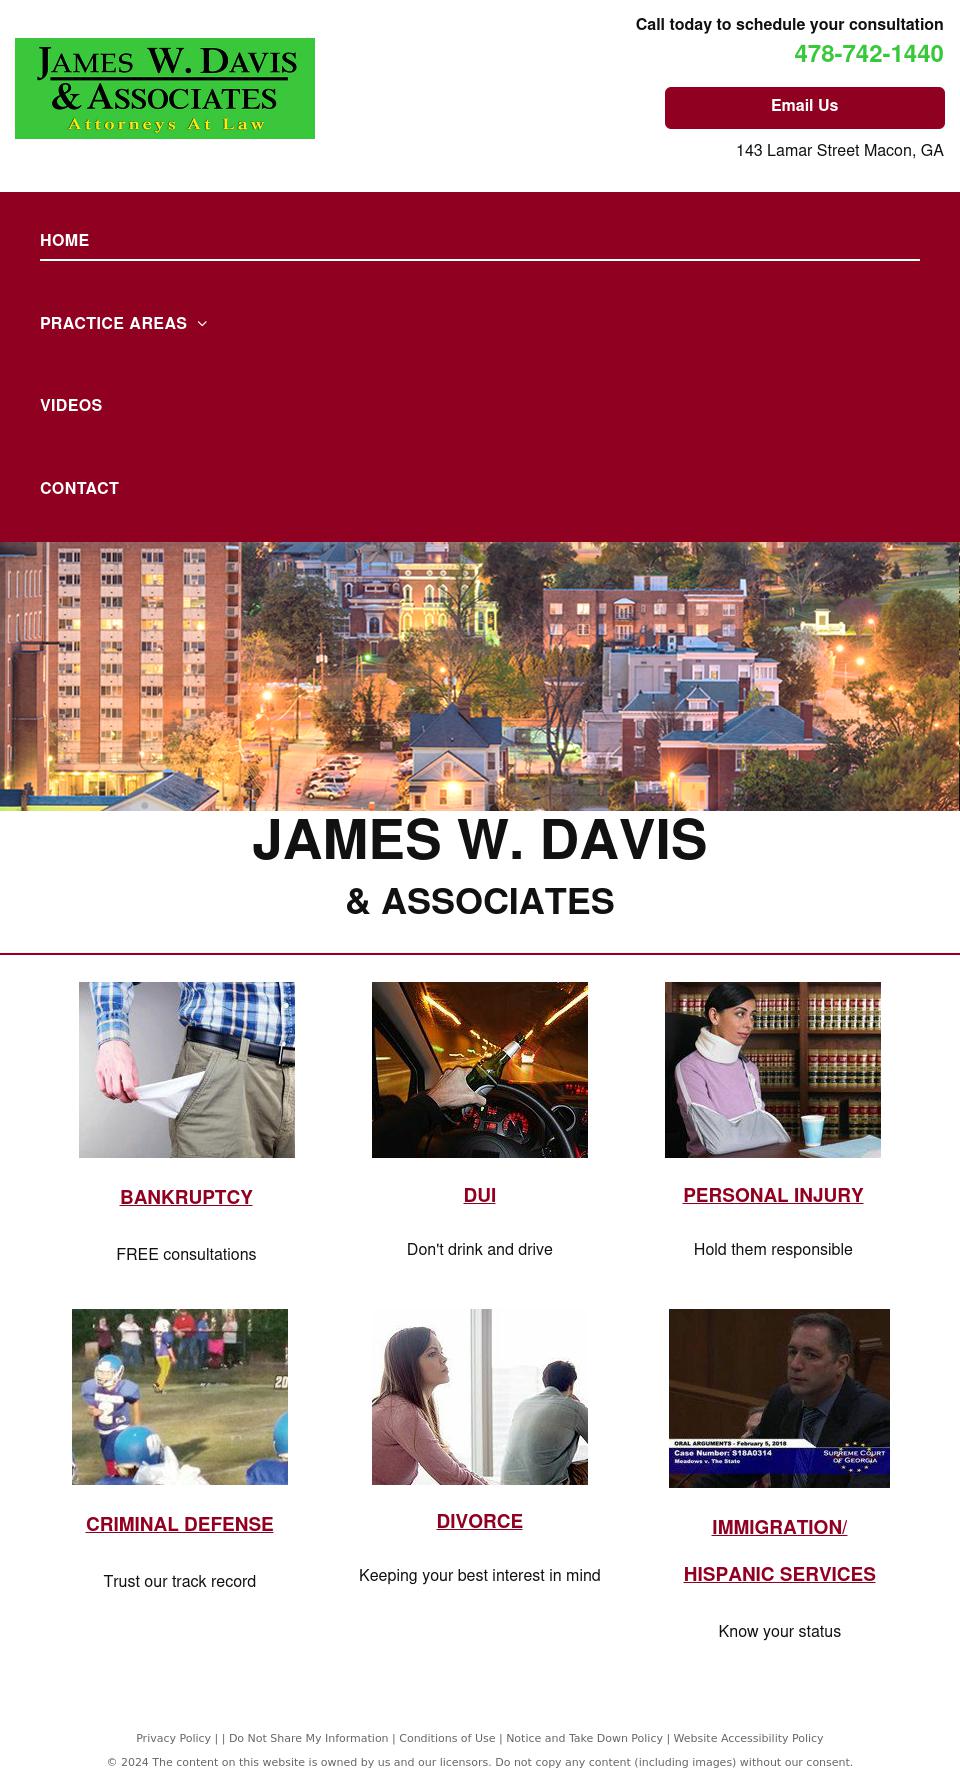 James W. Davis & Associates - Macon GA Lawyers